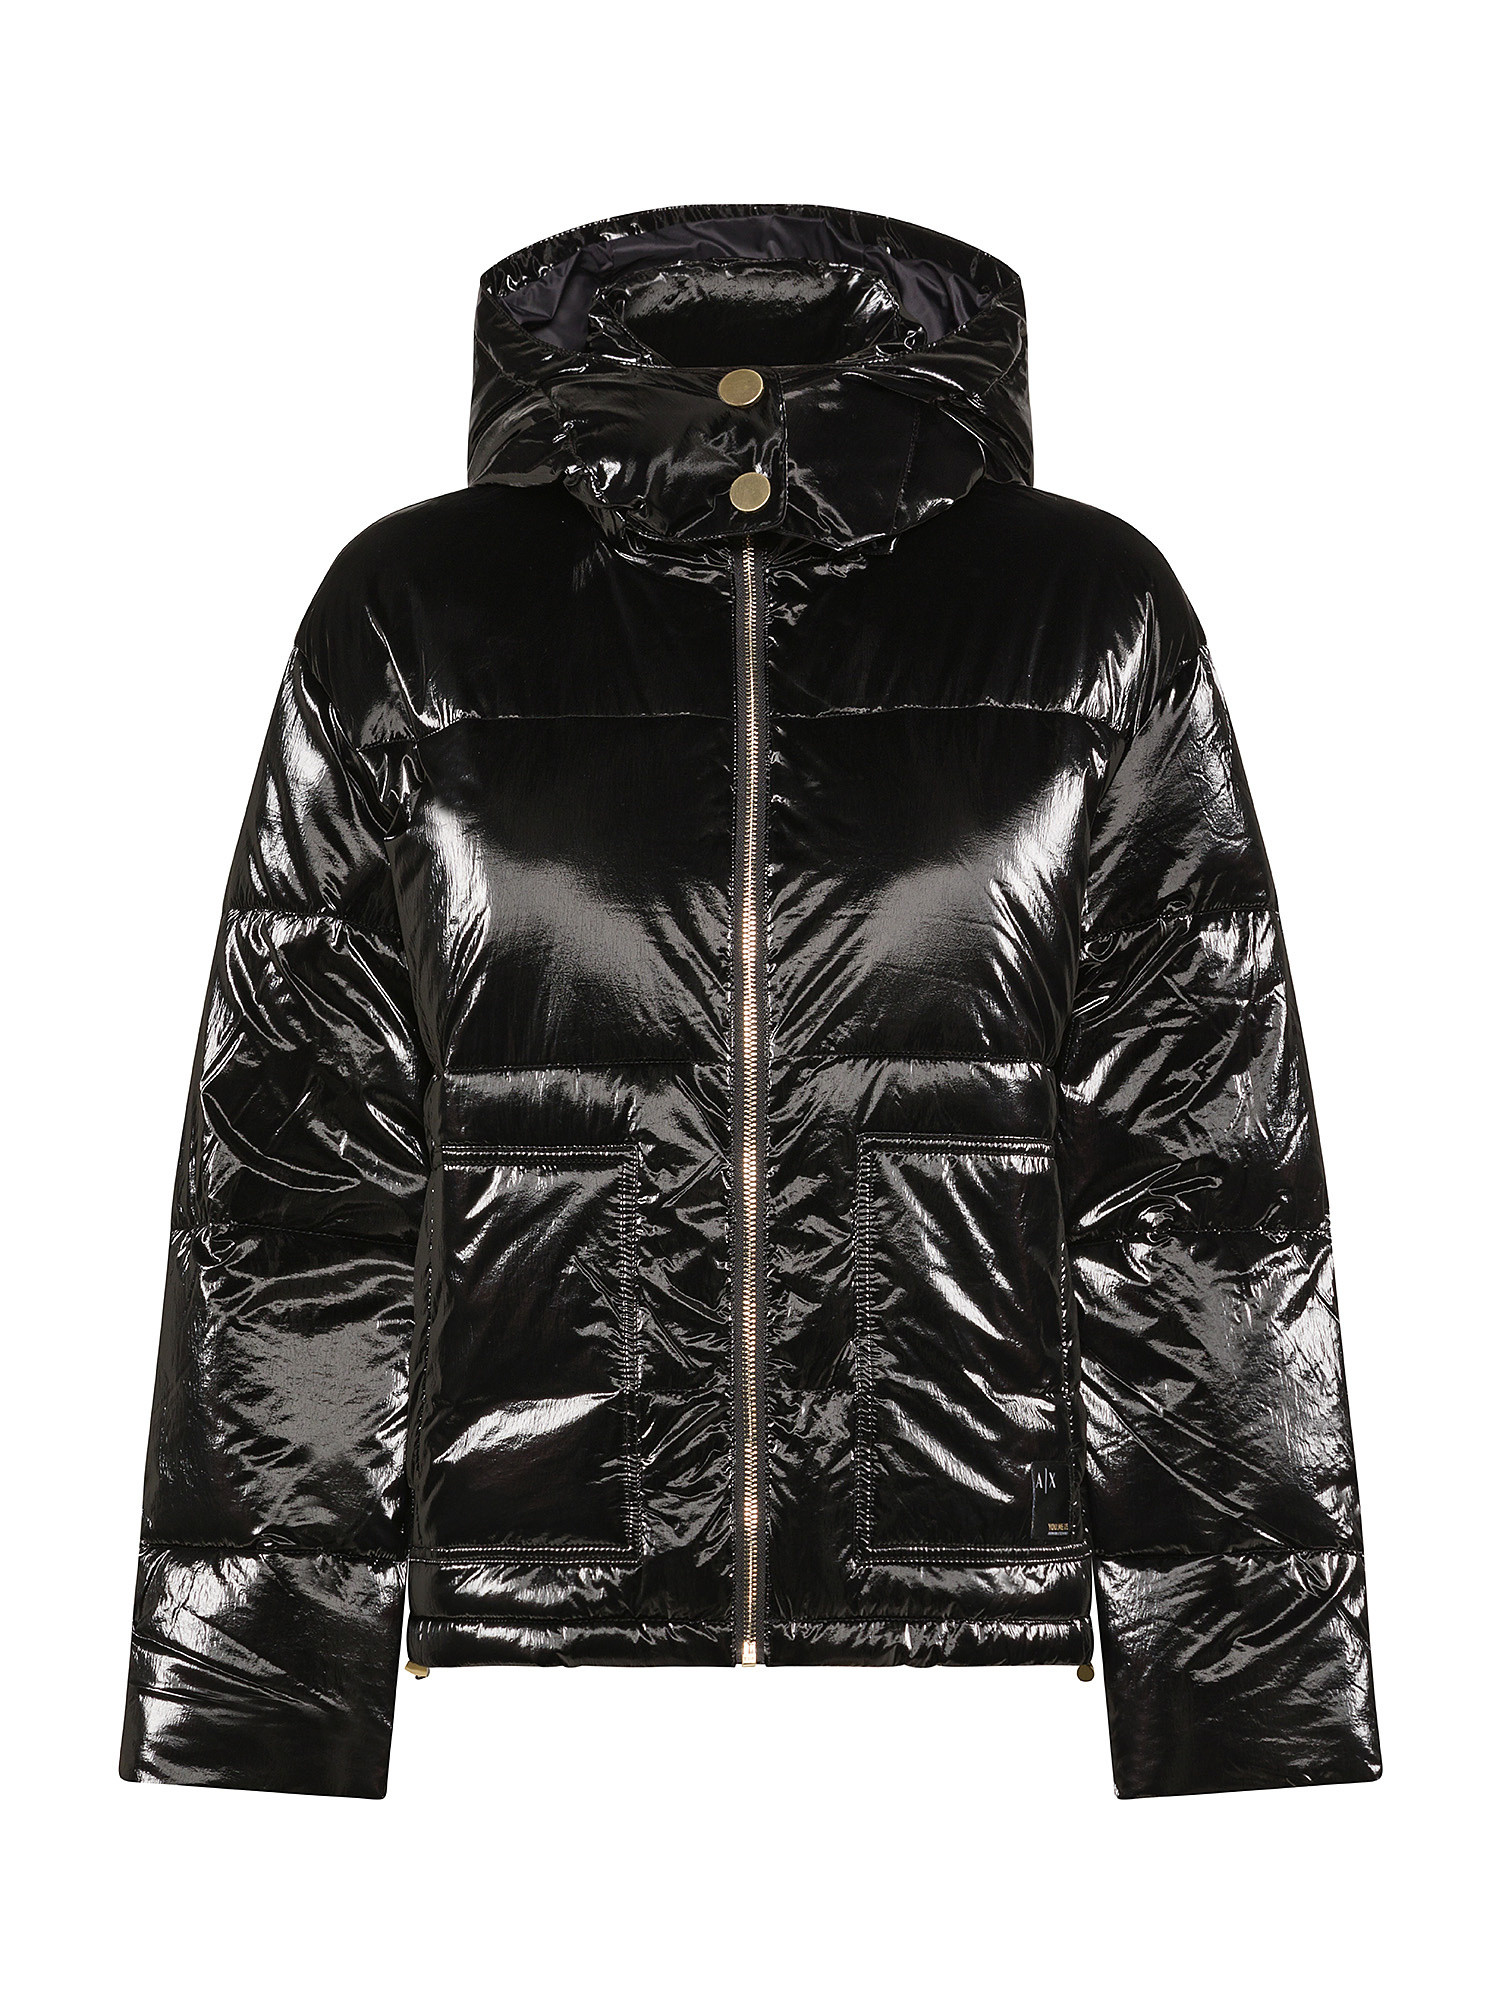 Armani Exchange - Padded nylon jacket, Black, large image number 0